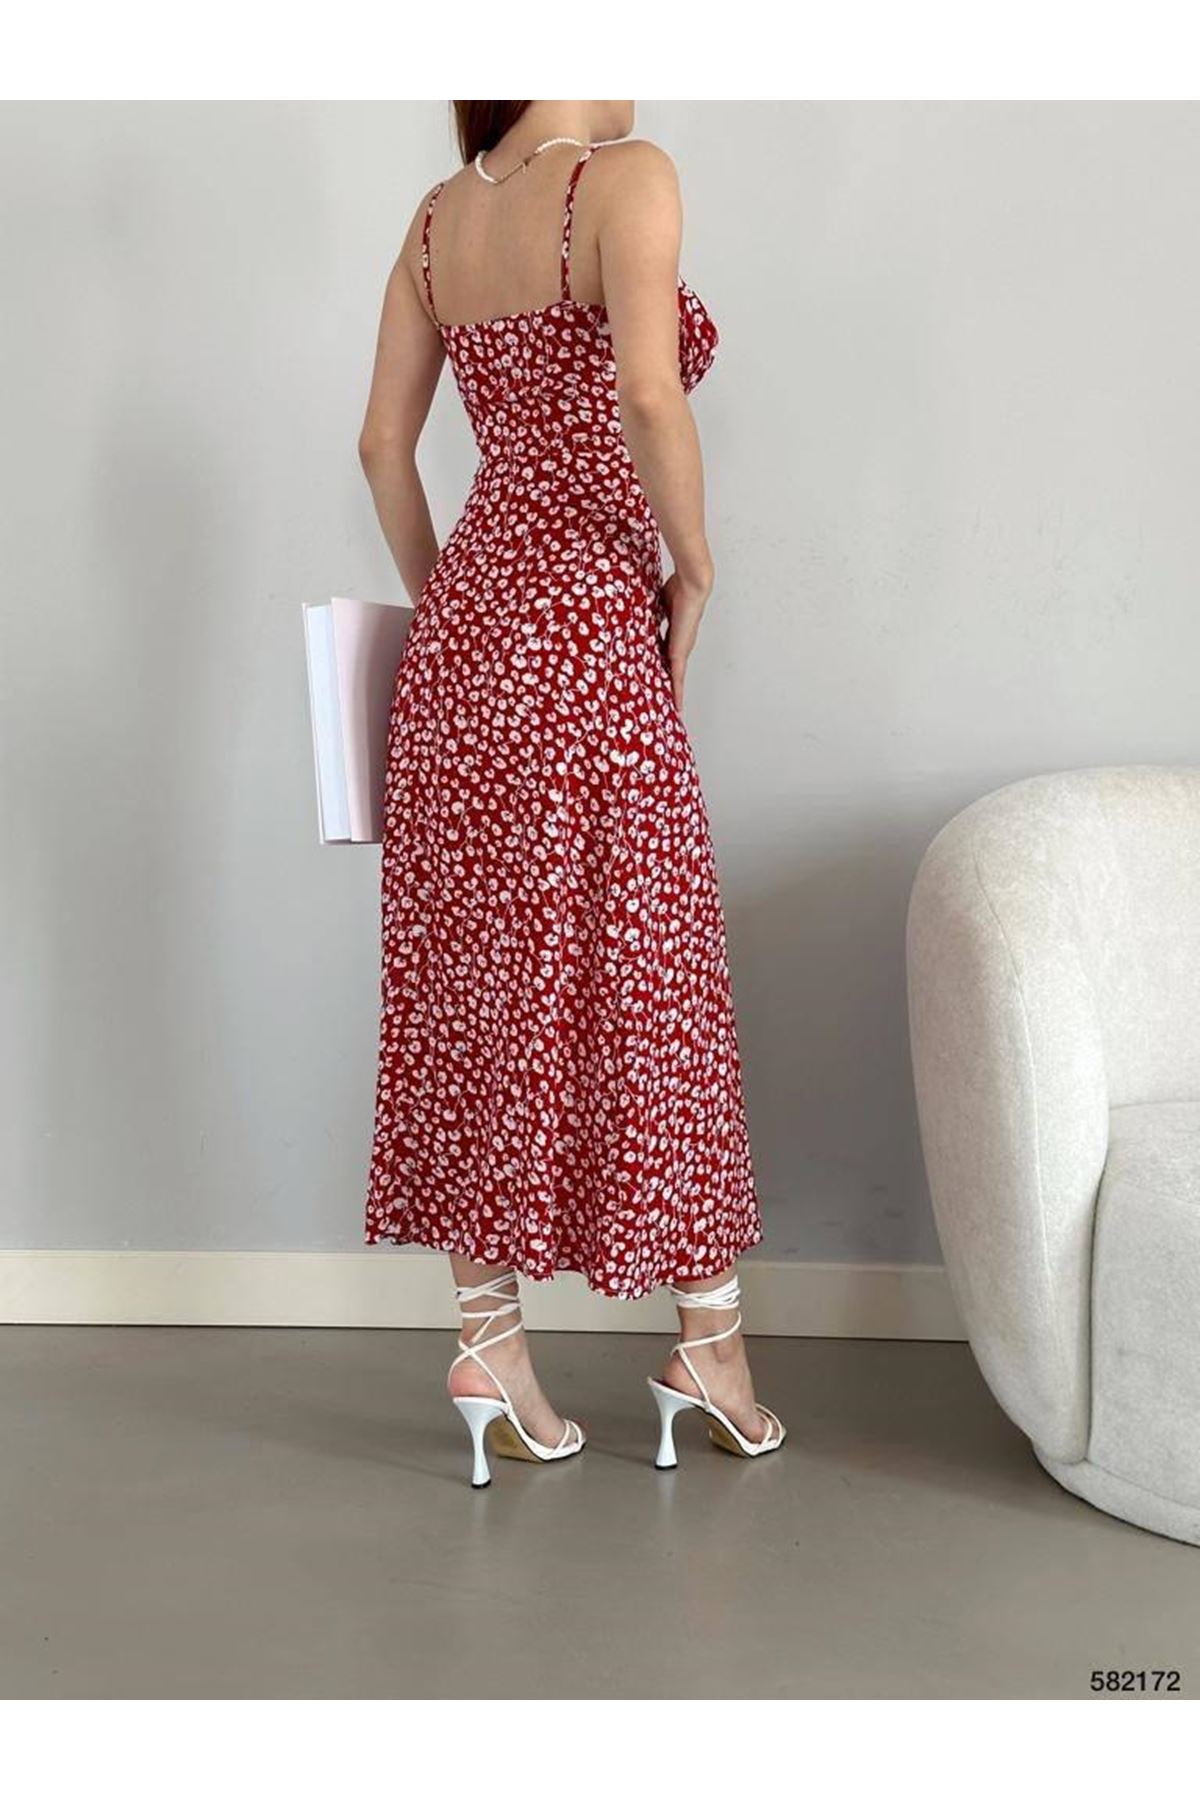 Kadın Askılı Bilek Boy Kırmızı Yırtmaçlı Yazlık Dokuma Elbise 5C-2141